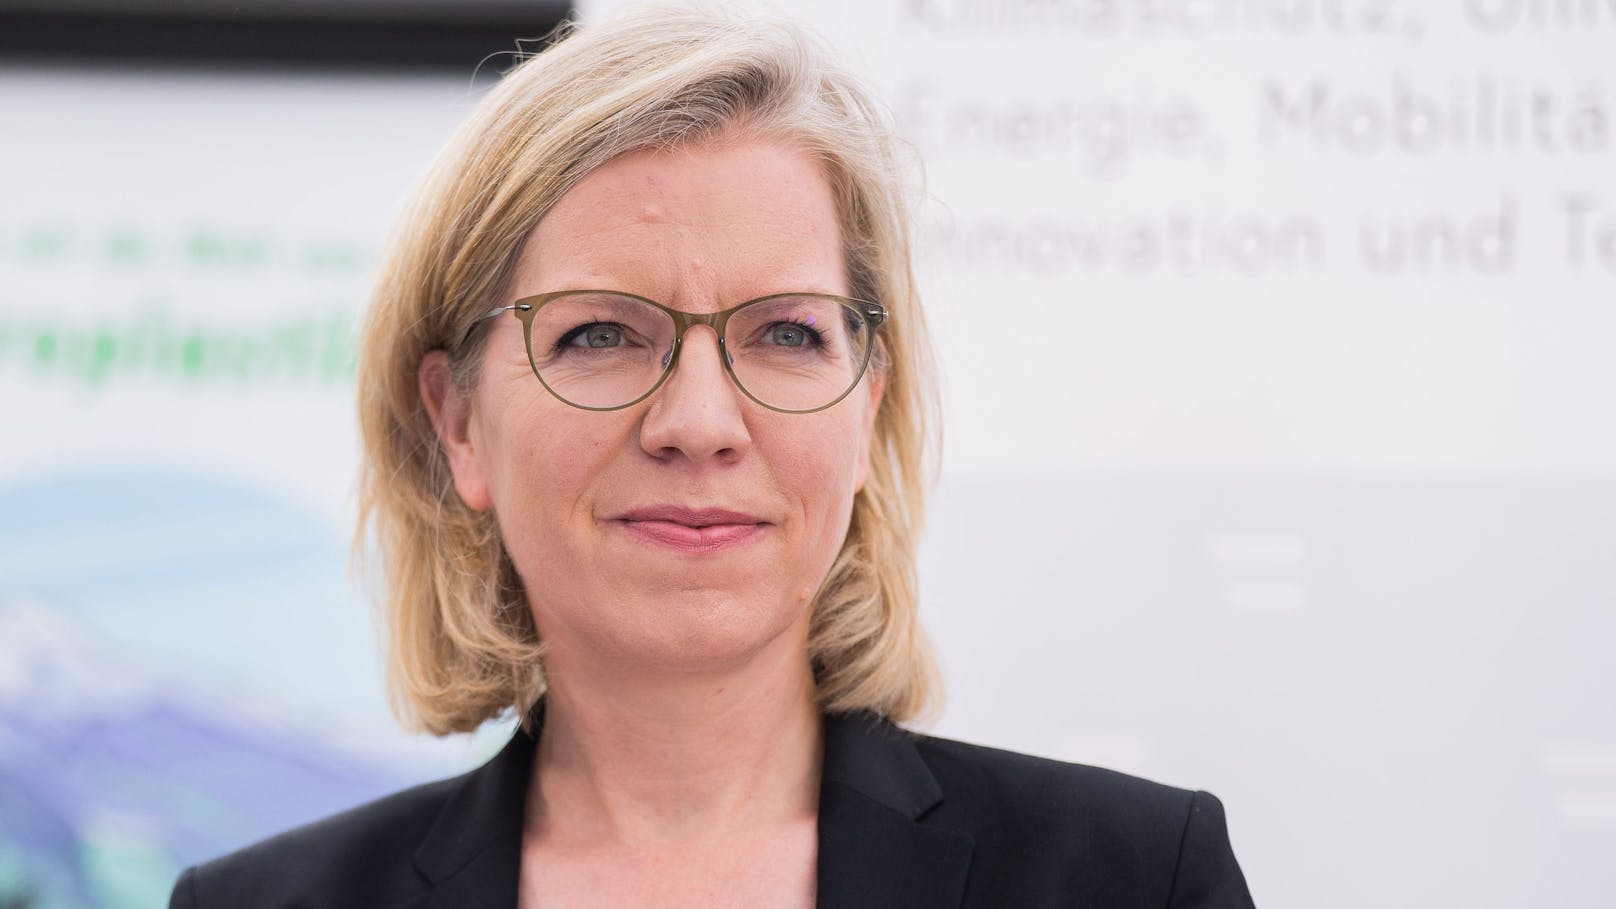 Klimaschutzministerin Leonore Gewessler (Grüne).